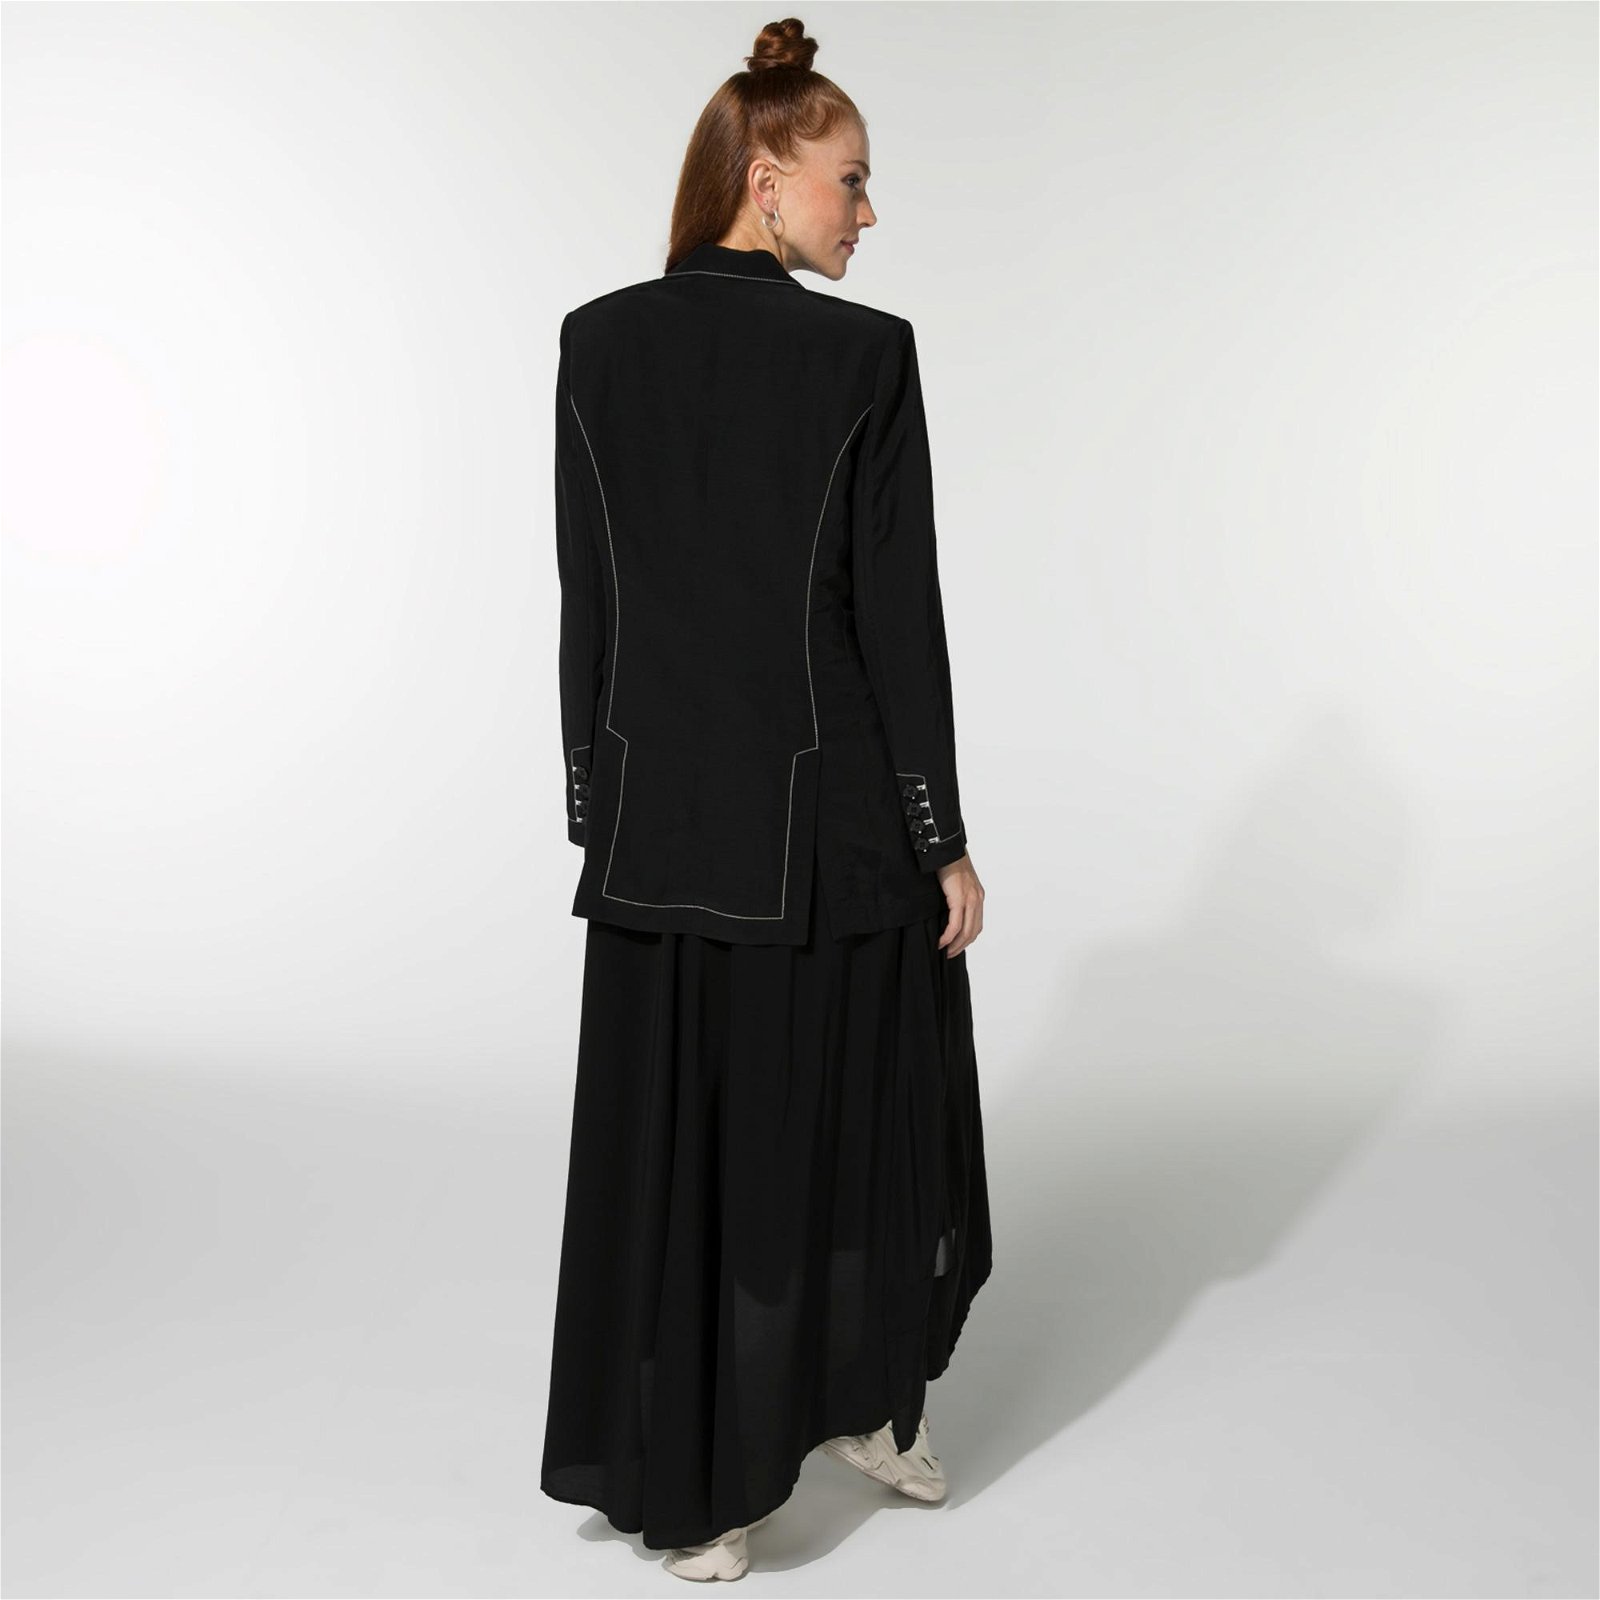 BAQA With Contrast Stitch Kadın Siyah Ceket